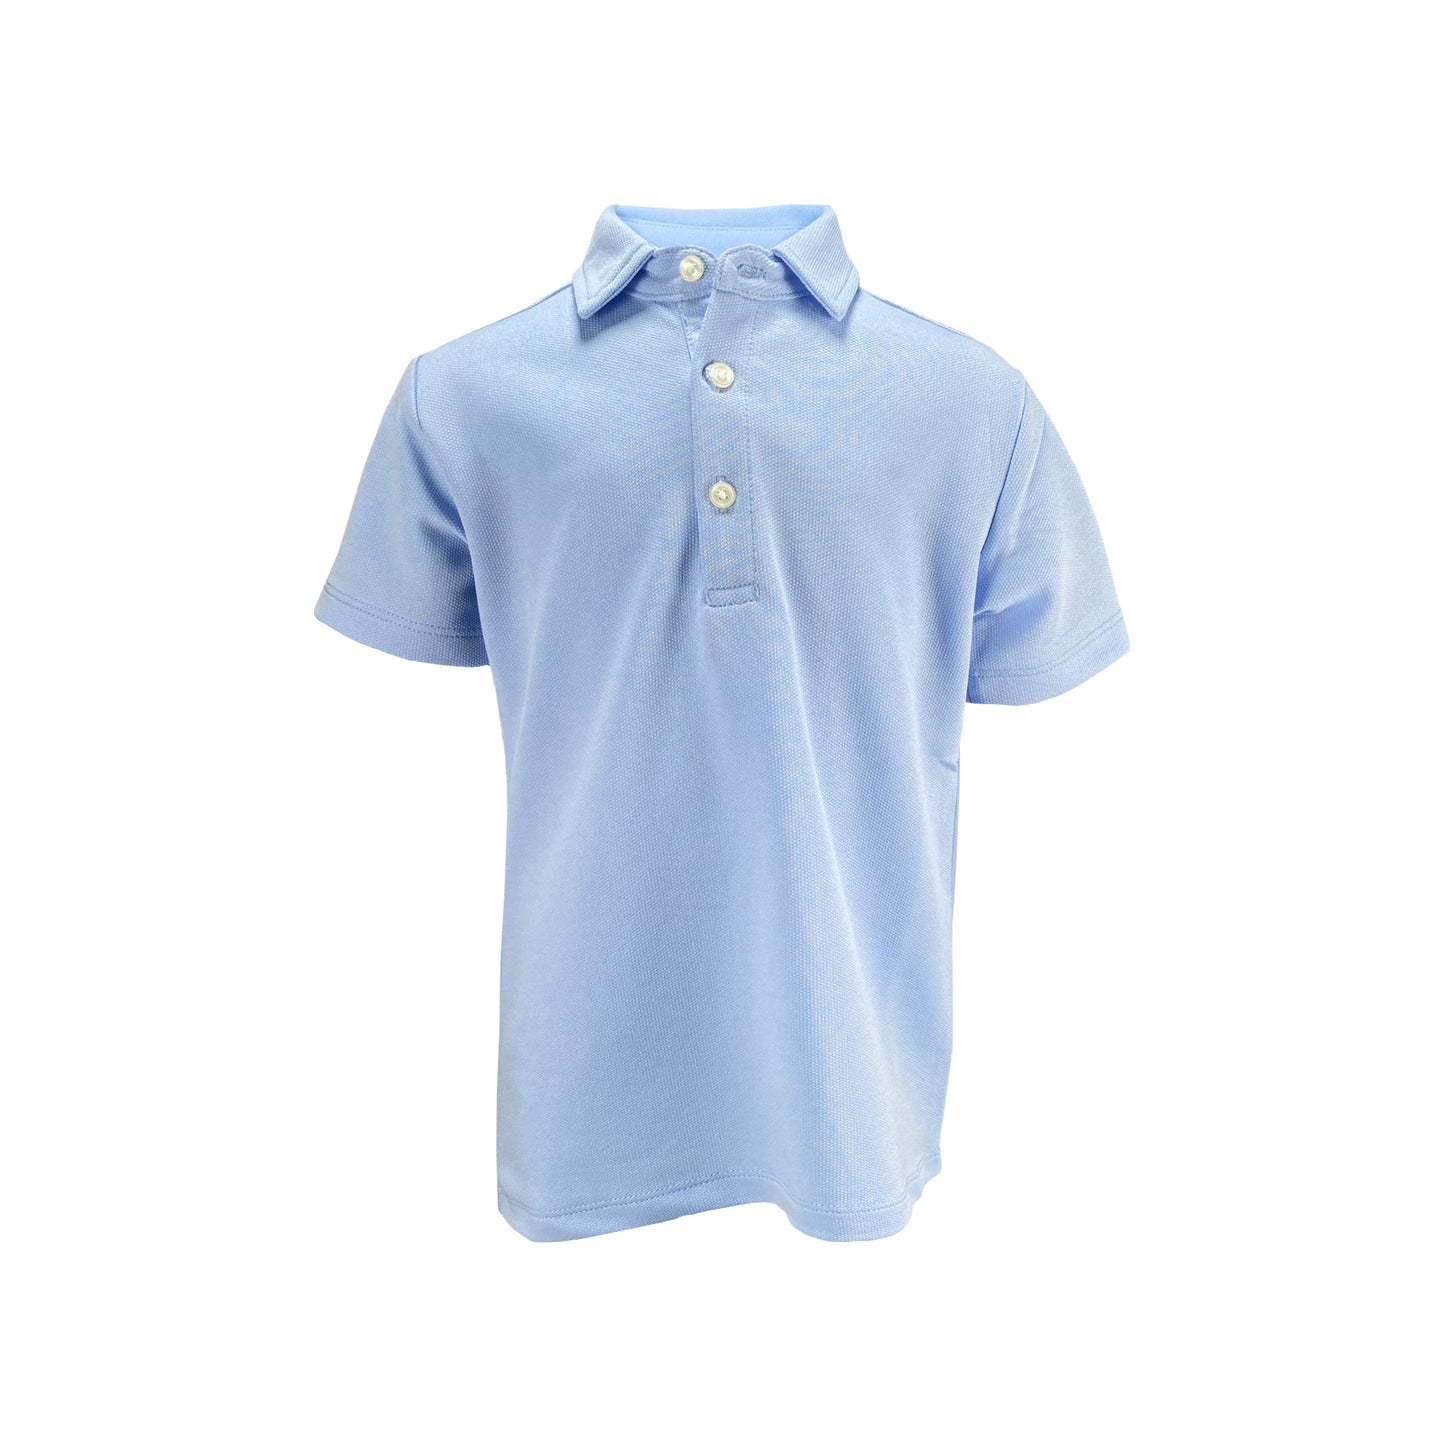 Ishtex ® Blue Polo T-Shirt